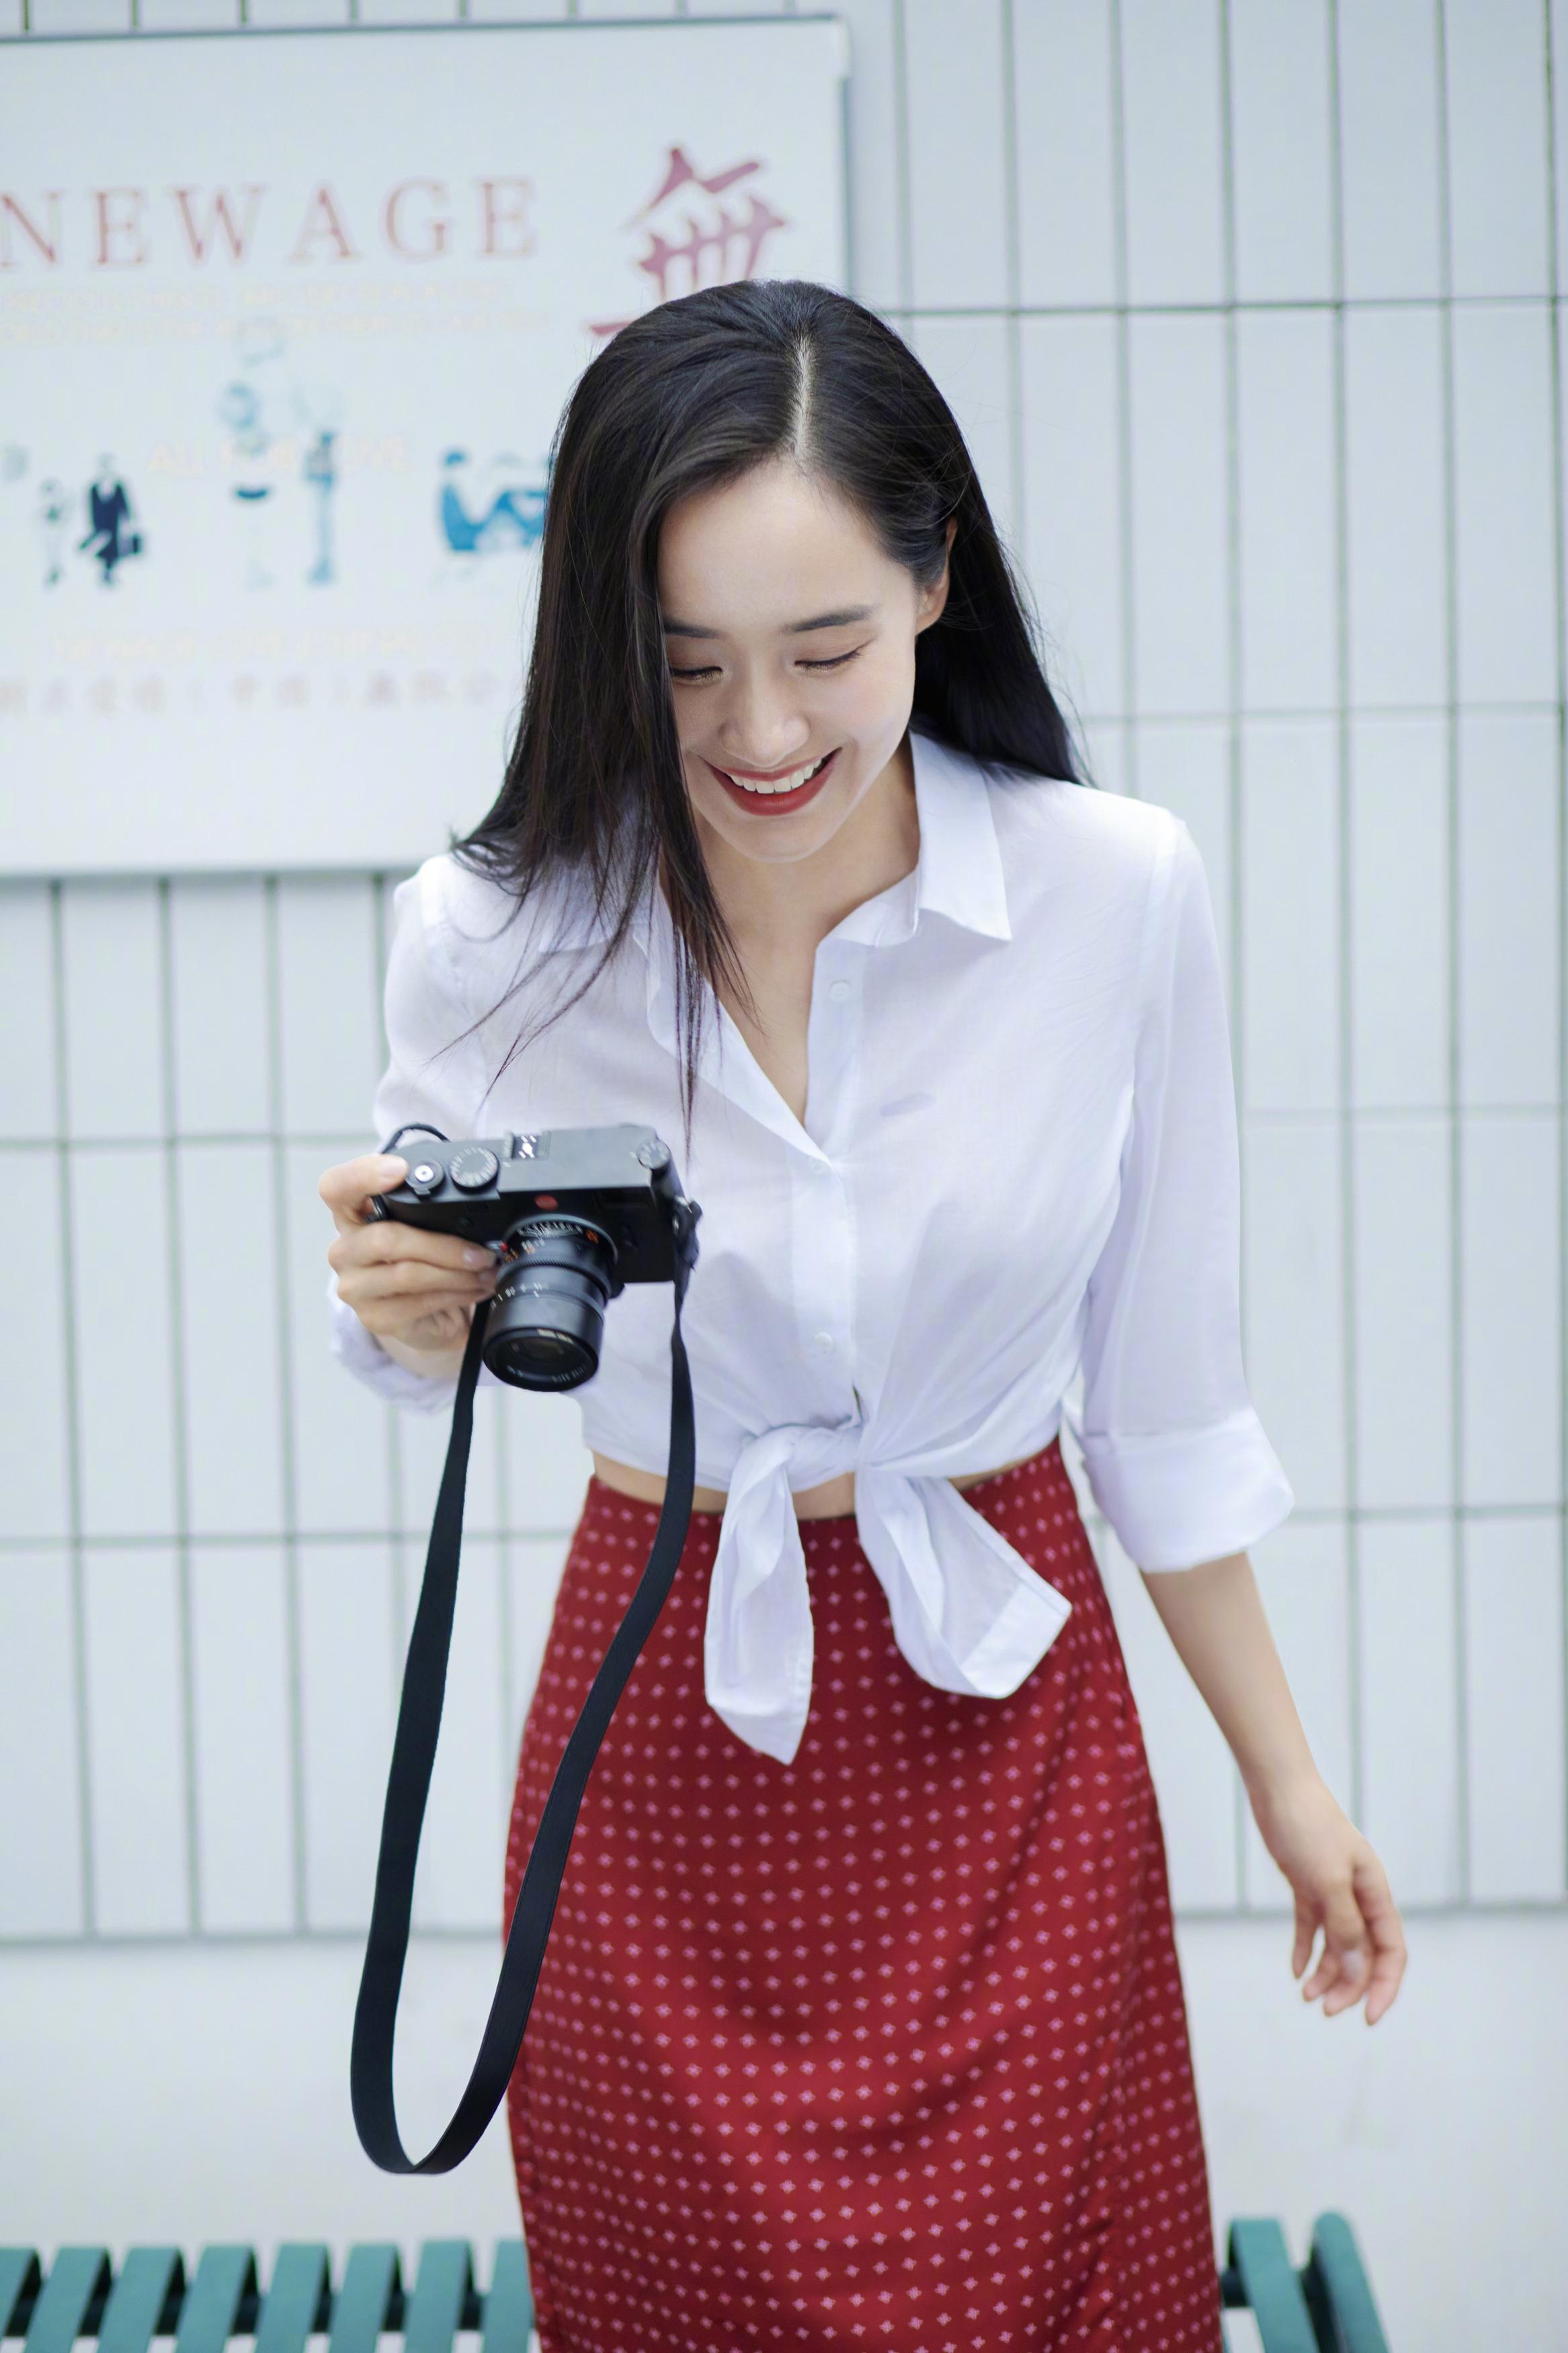 王智穿白衬衫搭红色复古波点裙 背相机笑容灿烂元气满满,